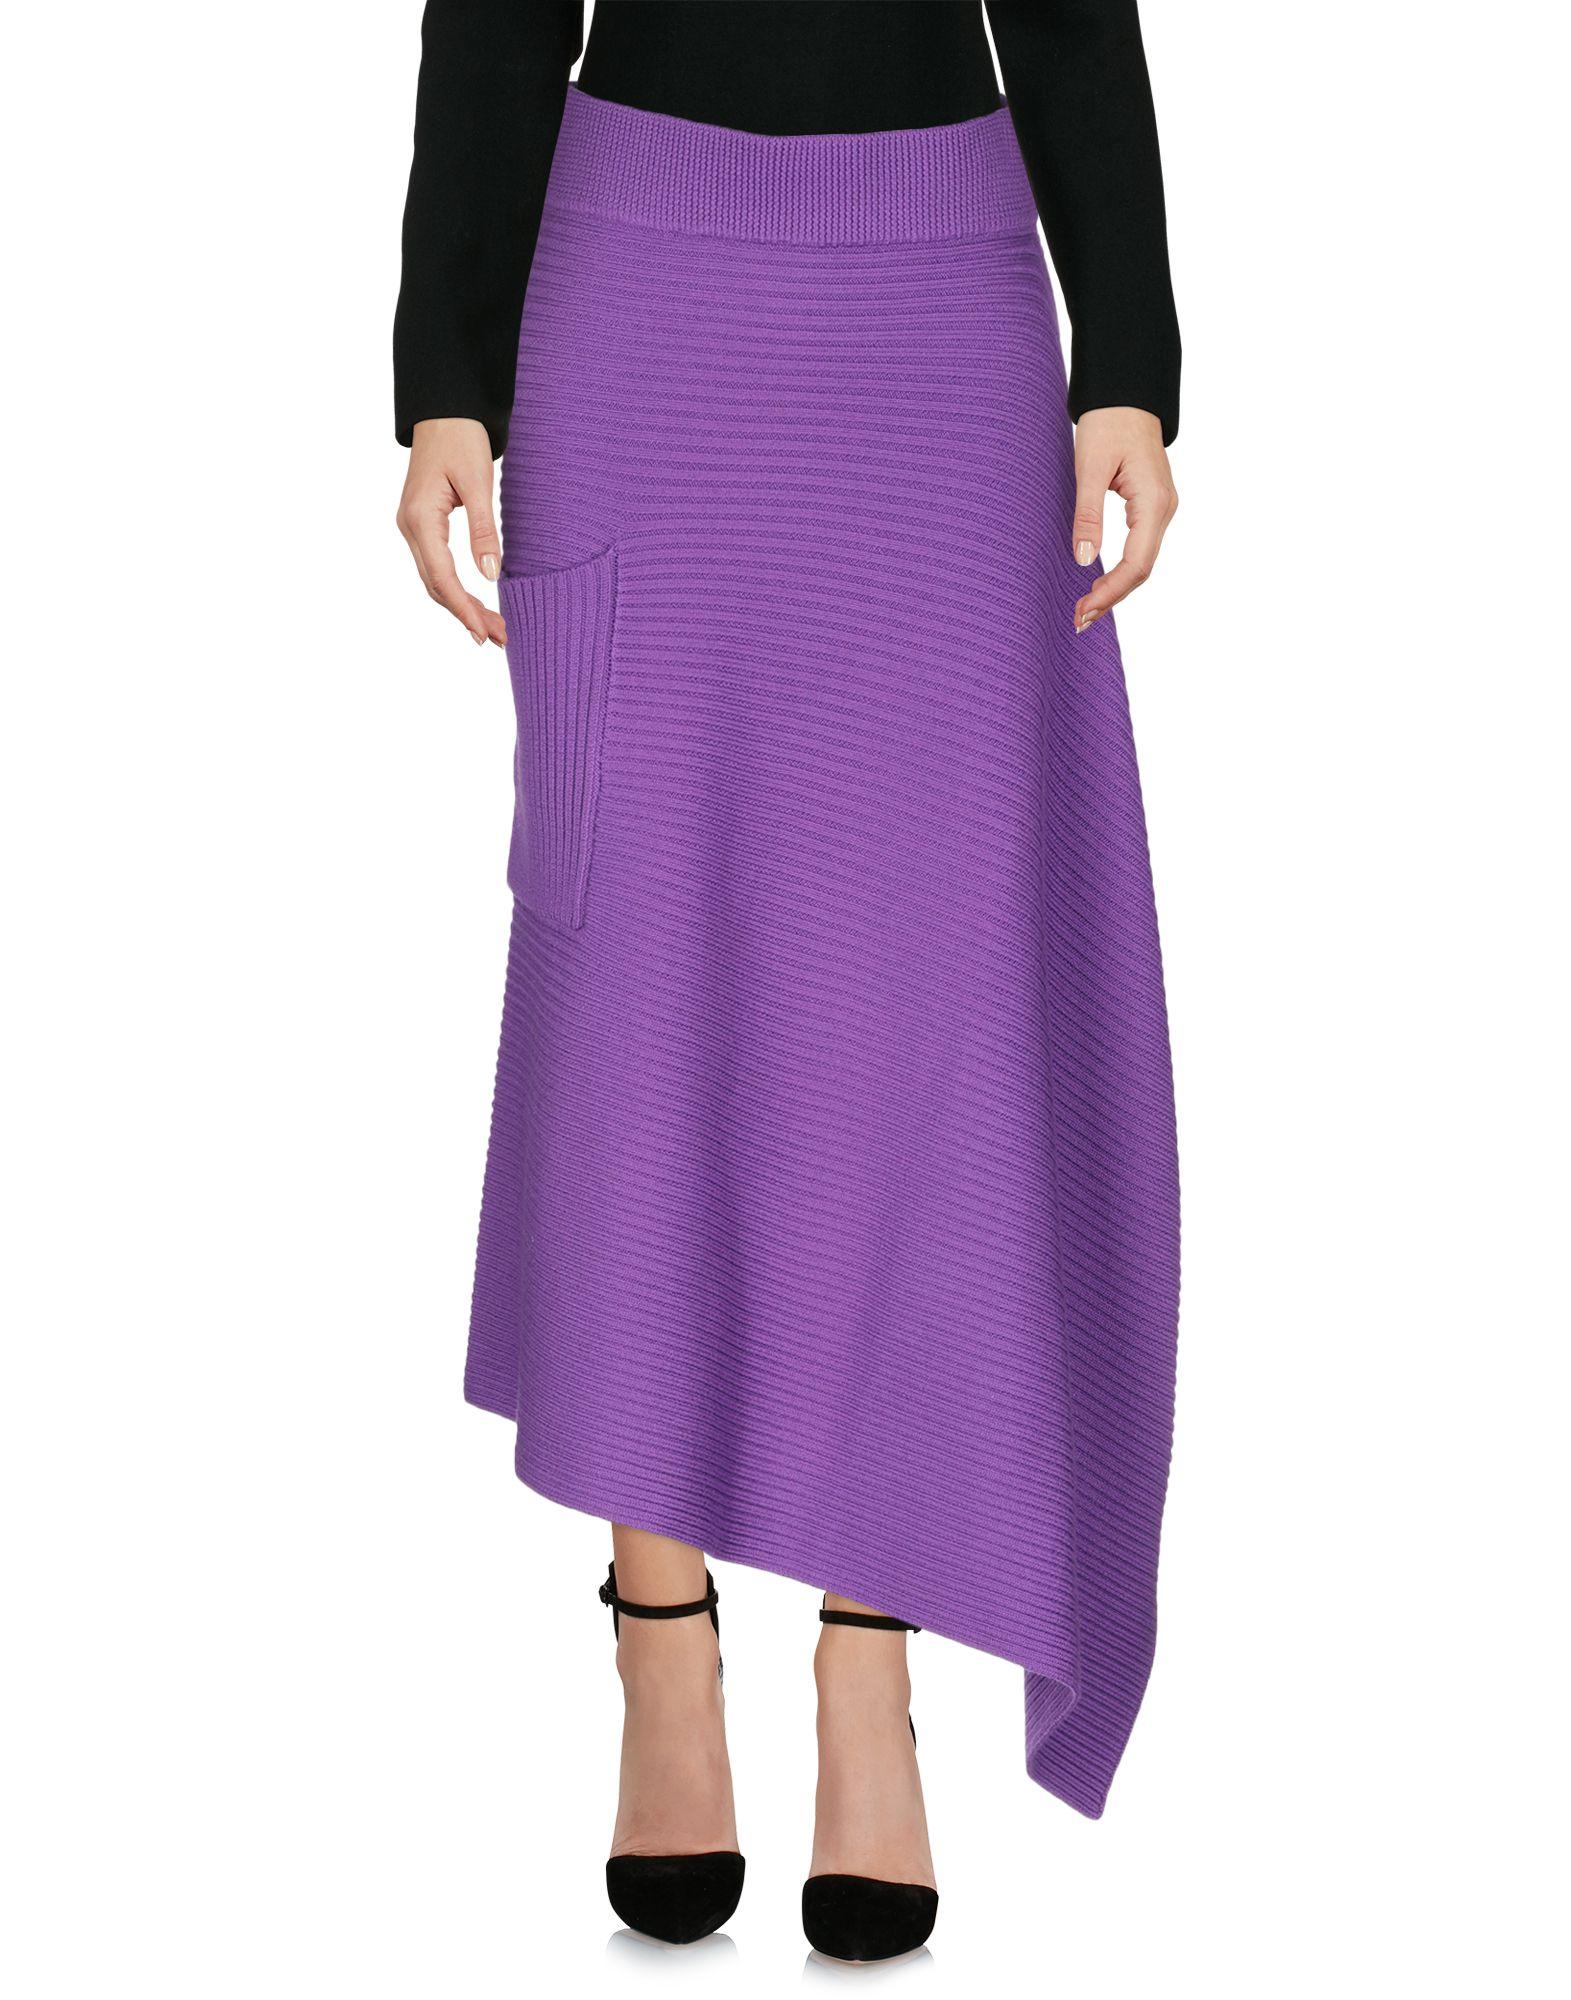 Tibi 3/4 Length Skirt in Purple - Lyst